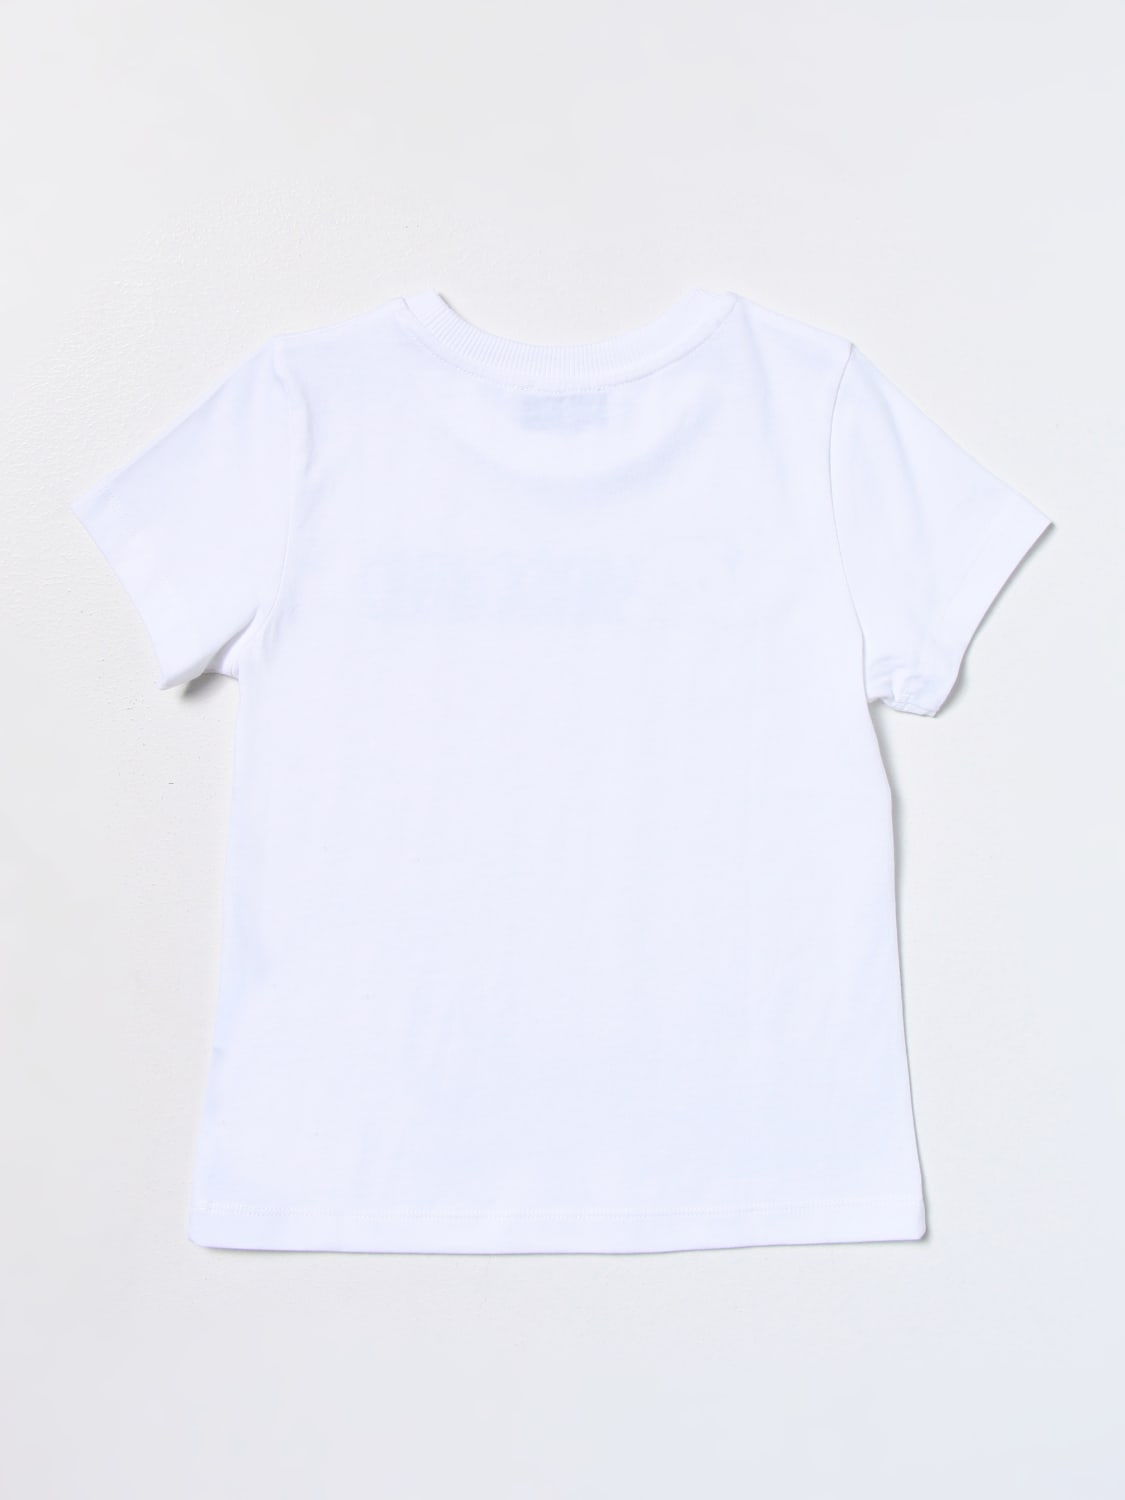 MOSCHINO KID: t-shirt in cotton - White | Moschino Kid t-shirt ...